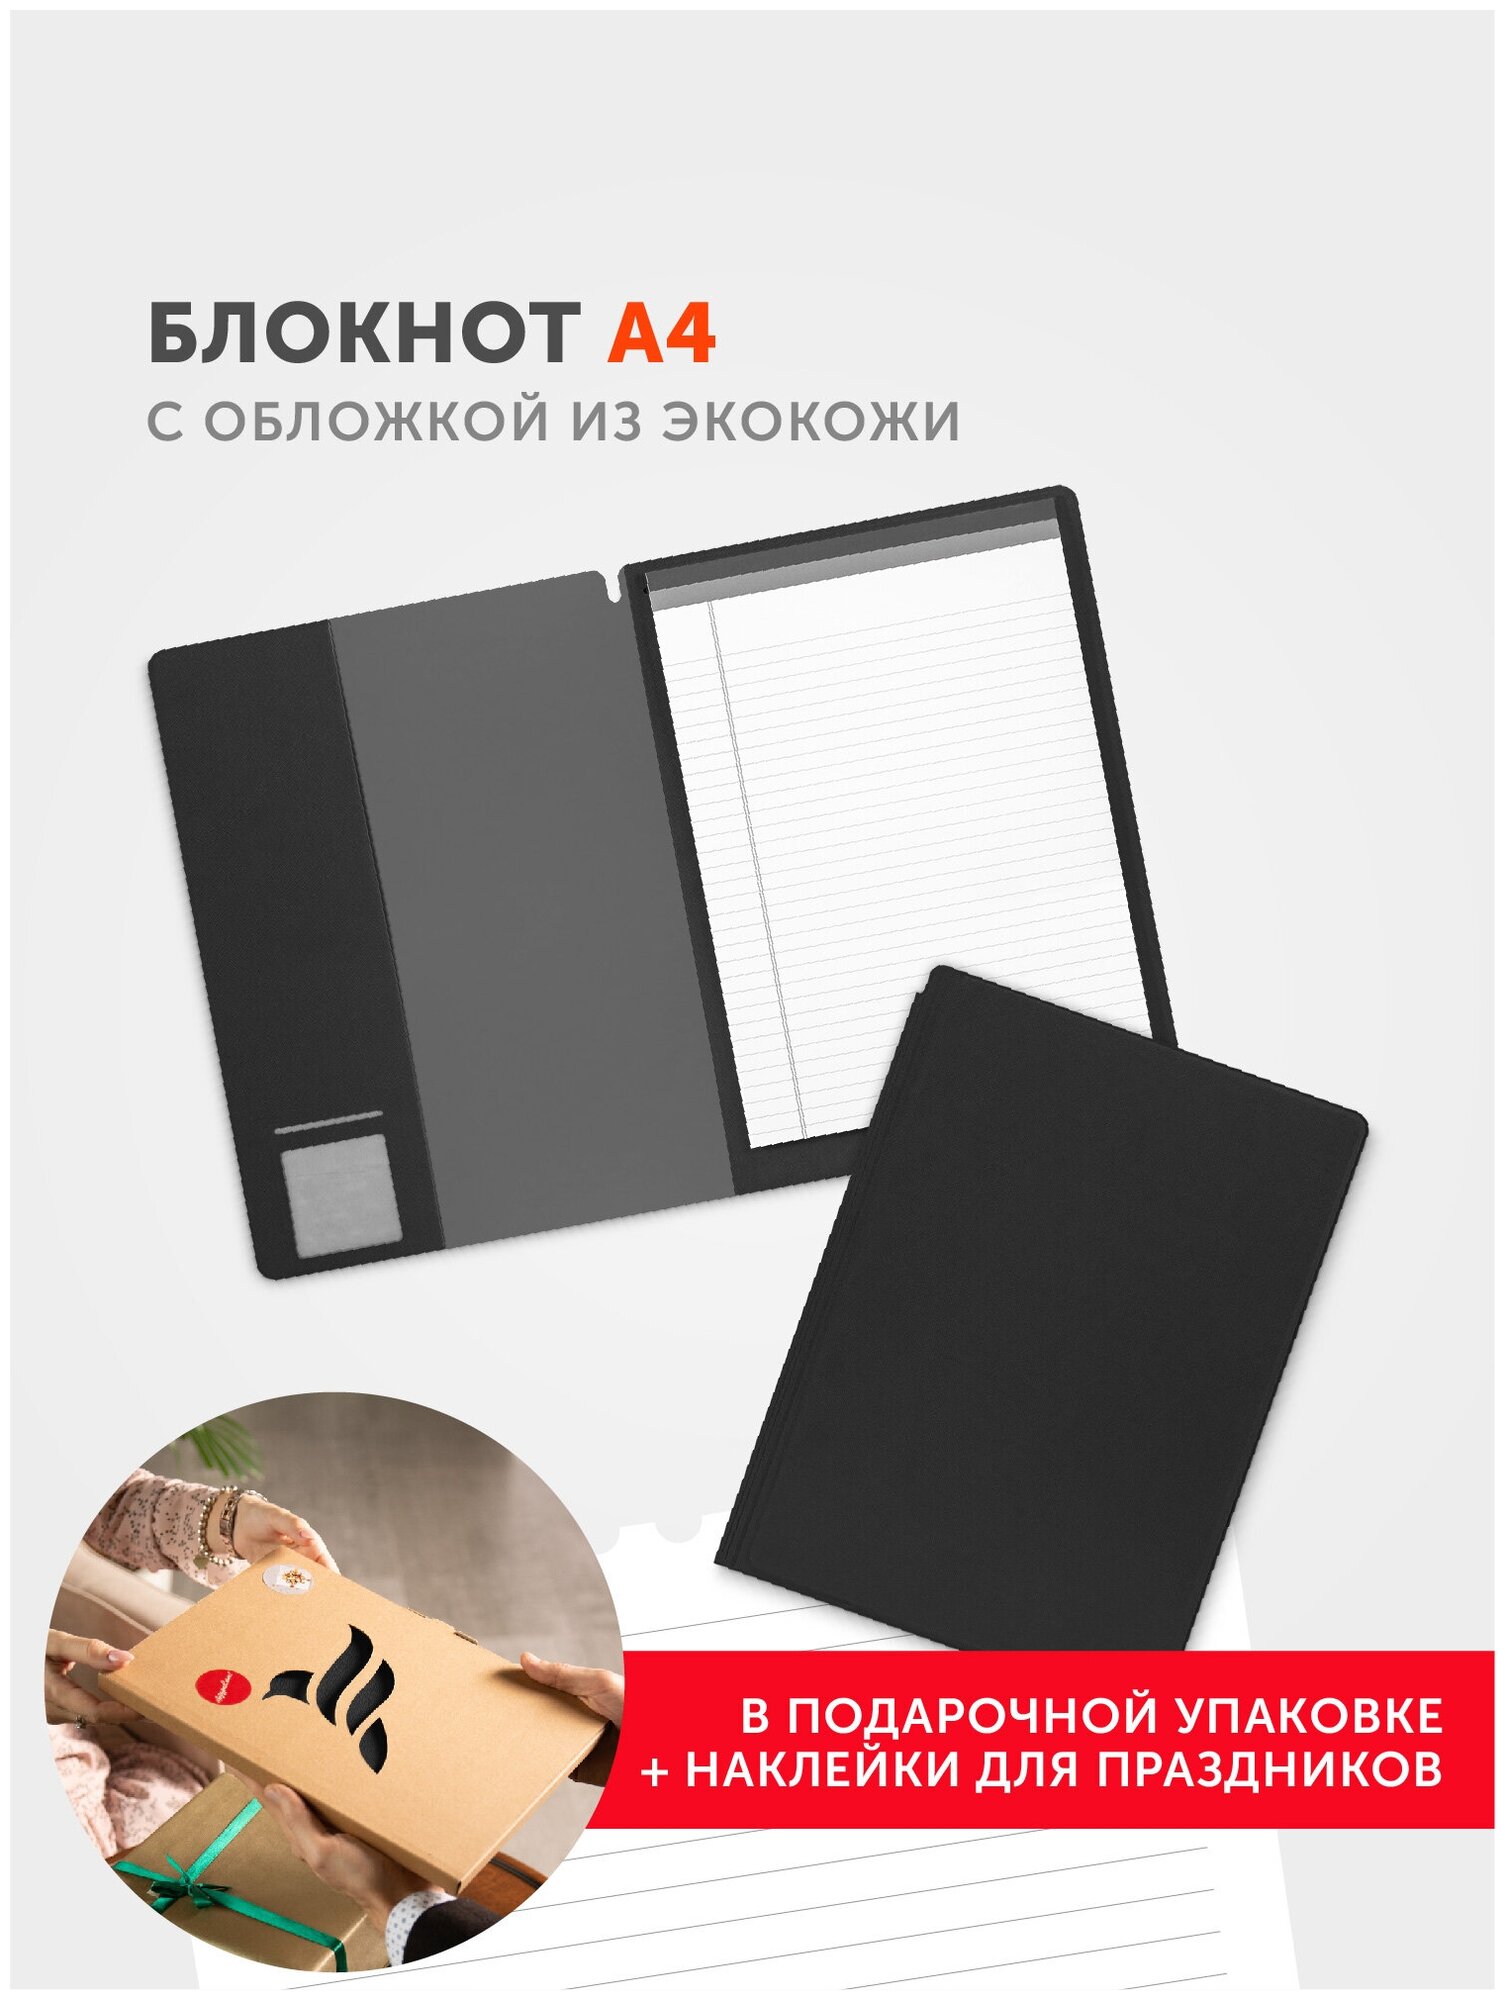 Блокнот-планшет формата A4 в обложке из экокожи Saffiano, в подарочной упаковке, цвет черный